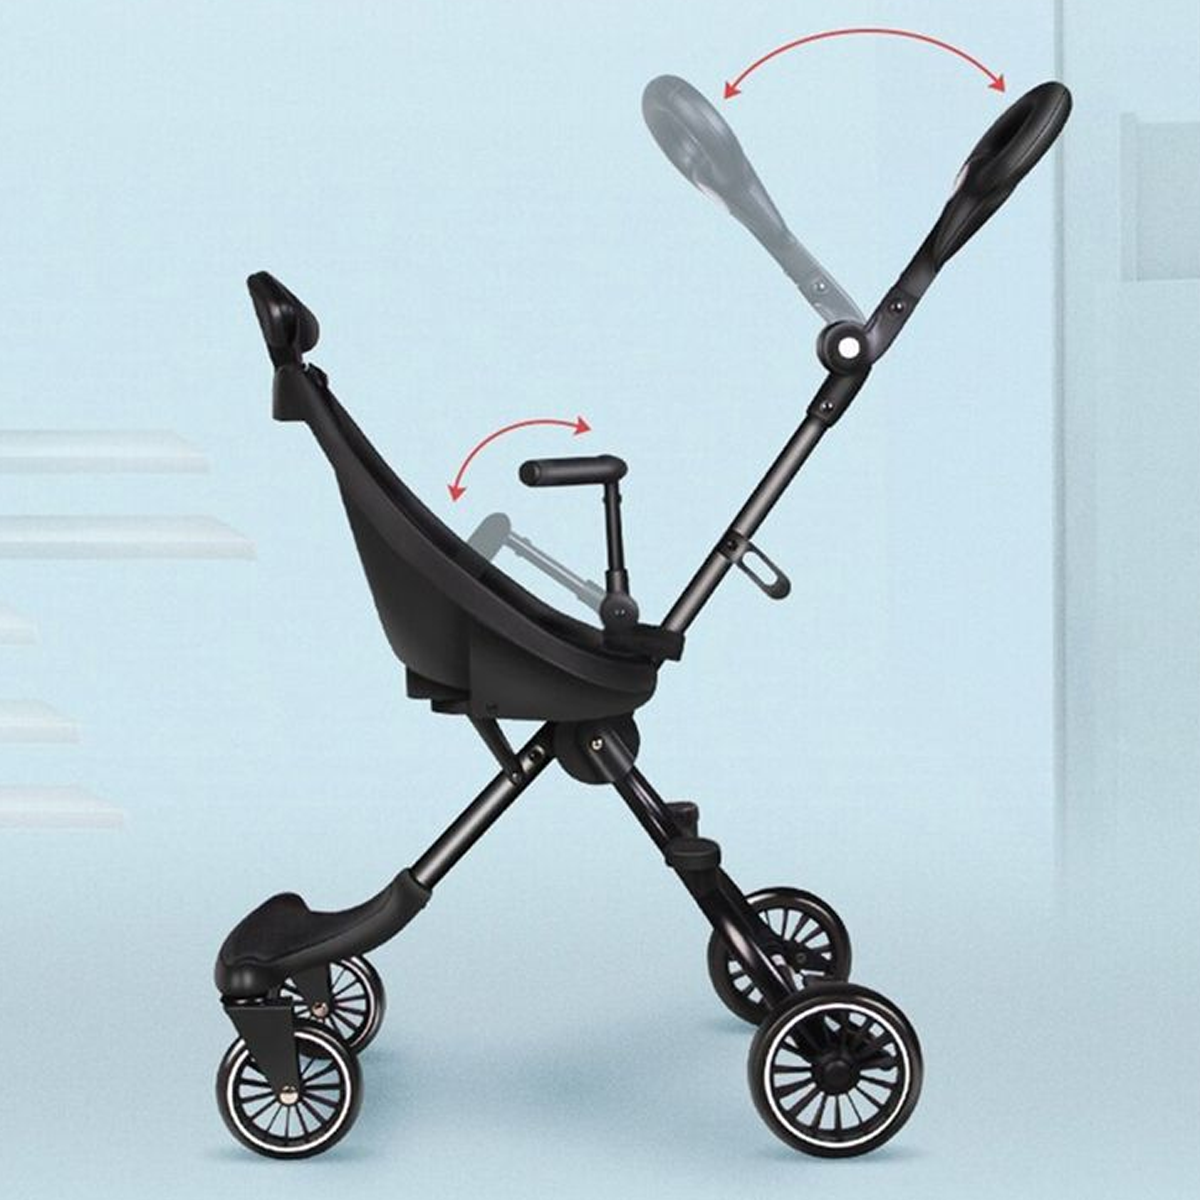 Little Angel - Baby Stroller Folding Portable Pram - Blue